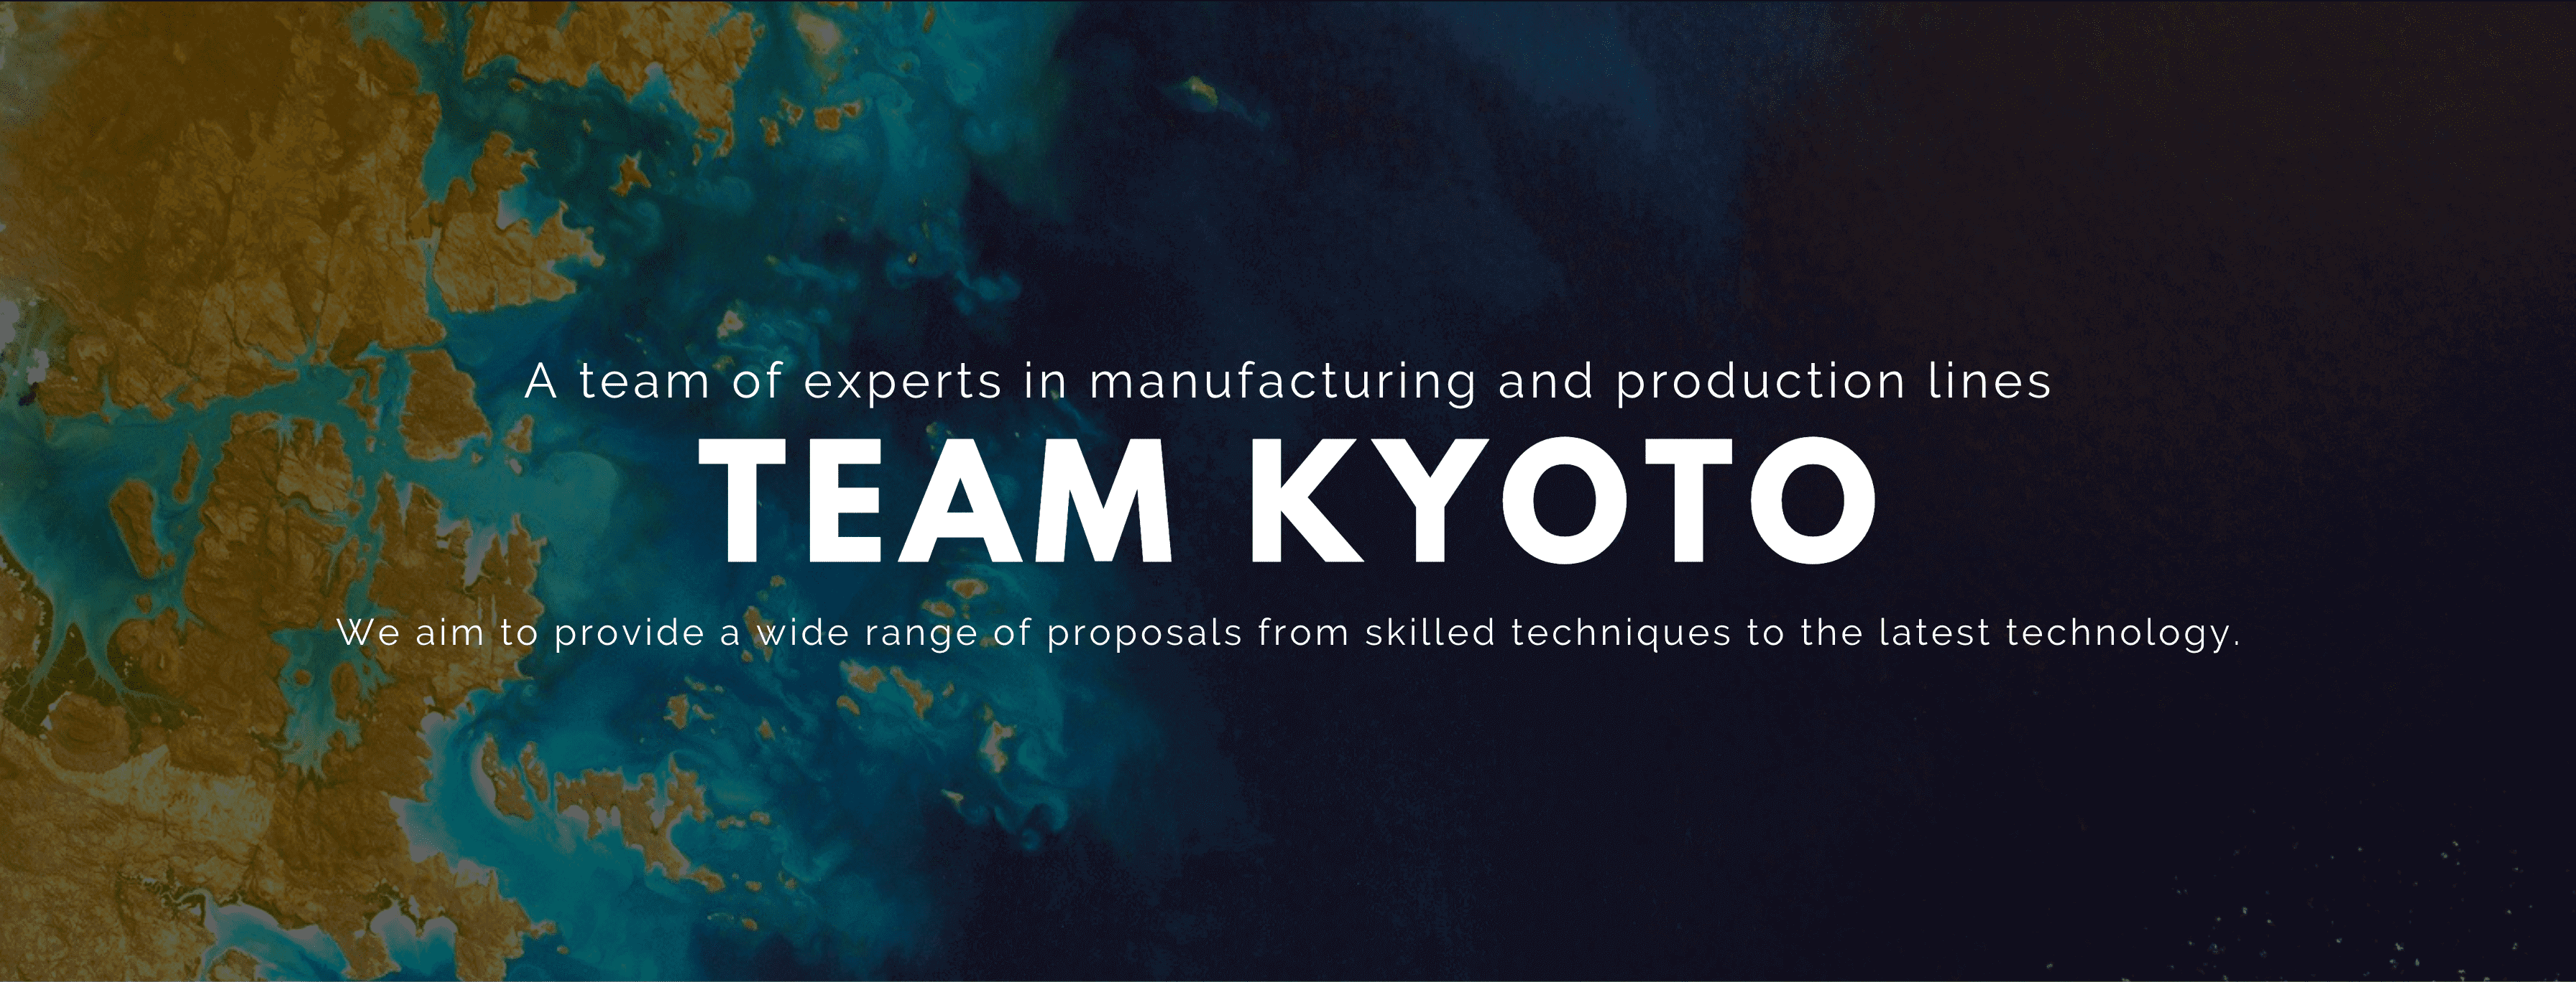 ものづくりと生産ラインのエキスパート、チーム京都、熟練の技から最新技術まで幅広いご提案を目指します